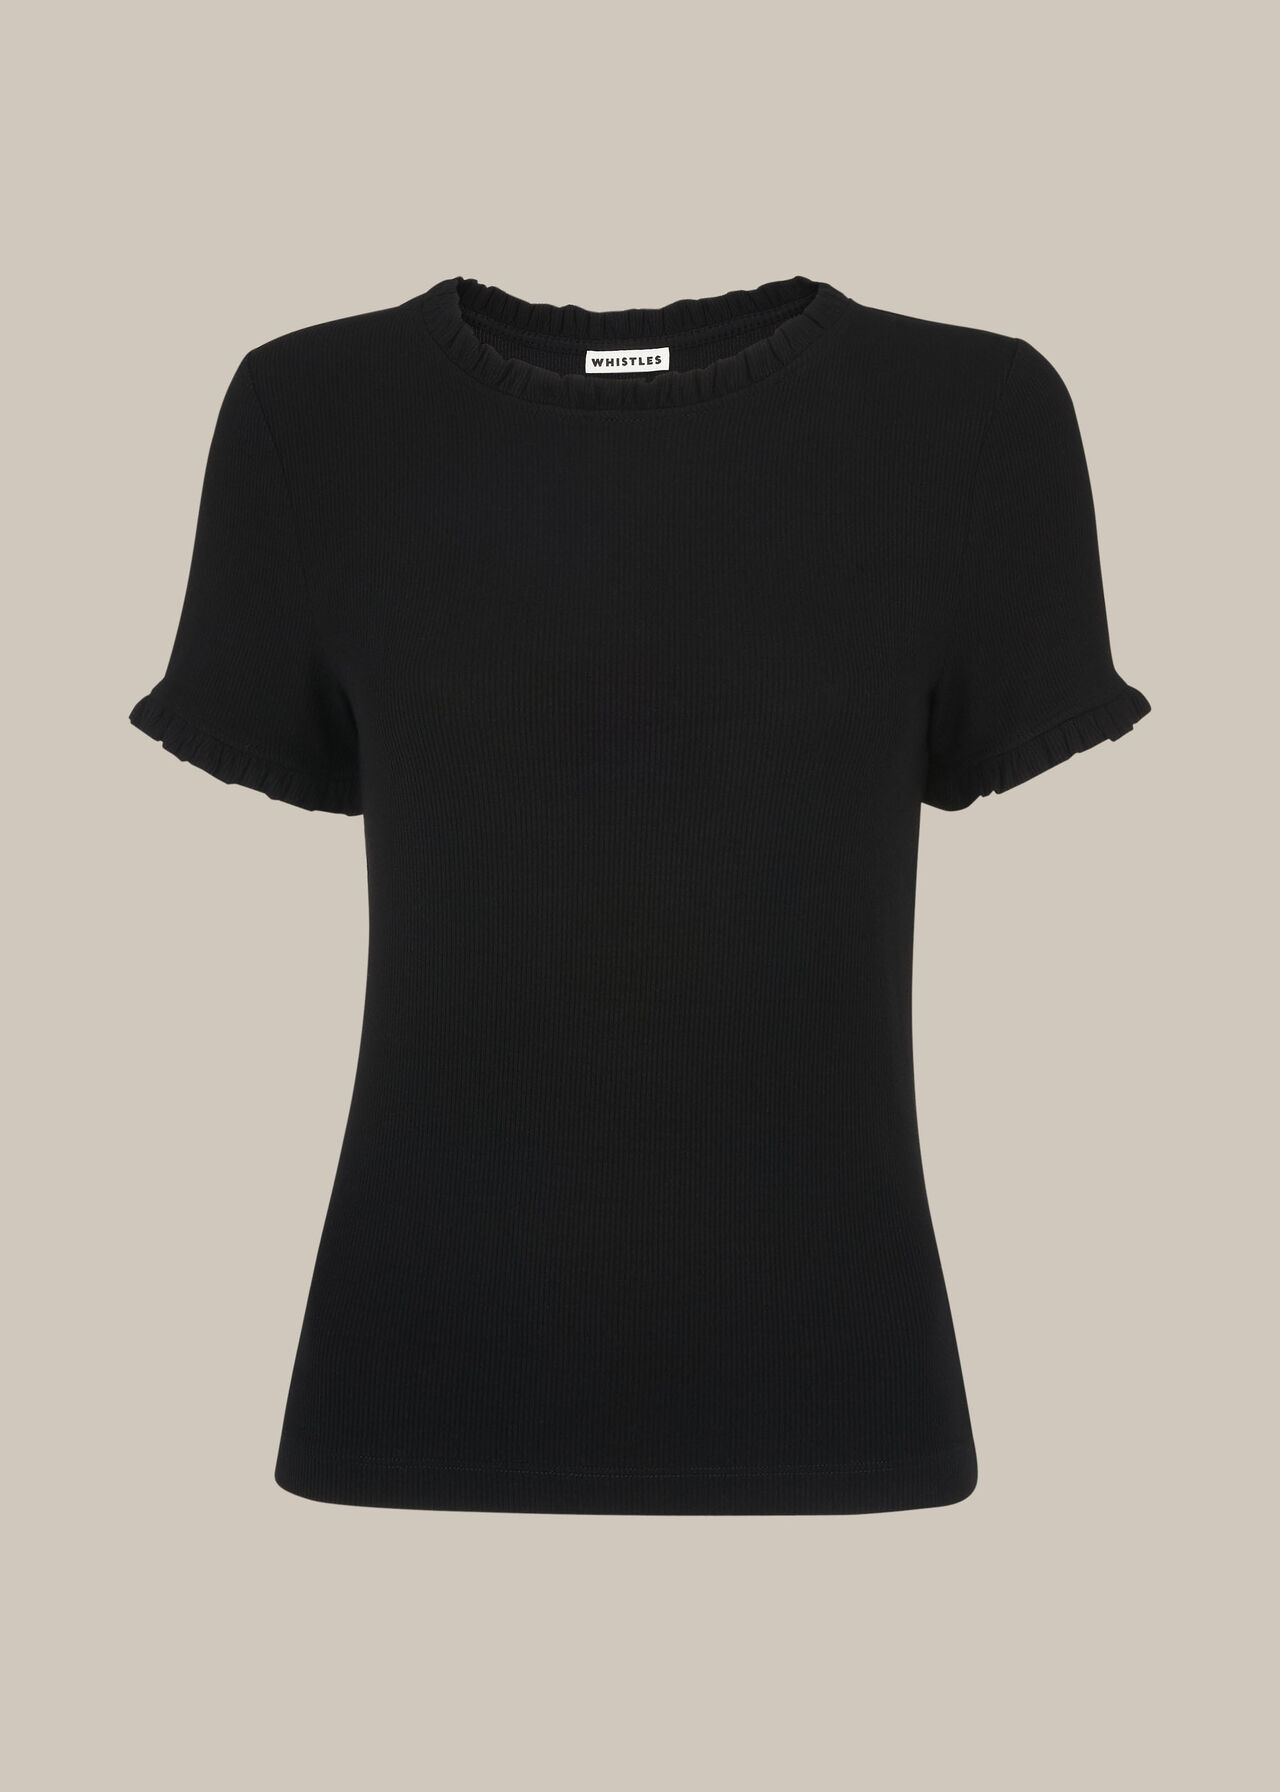 Black Rib Frill Detail Tshirt | WHISTLES | Whistles UK